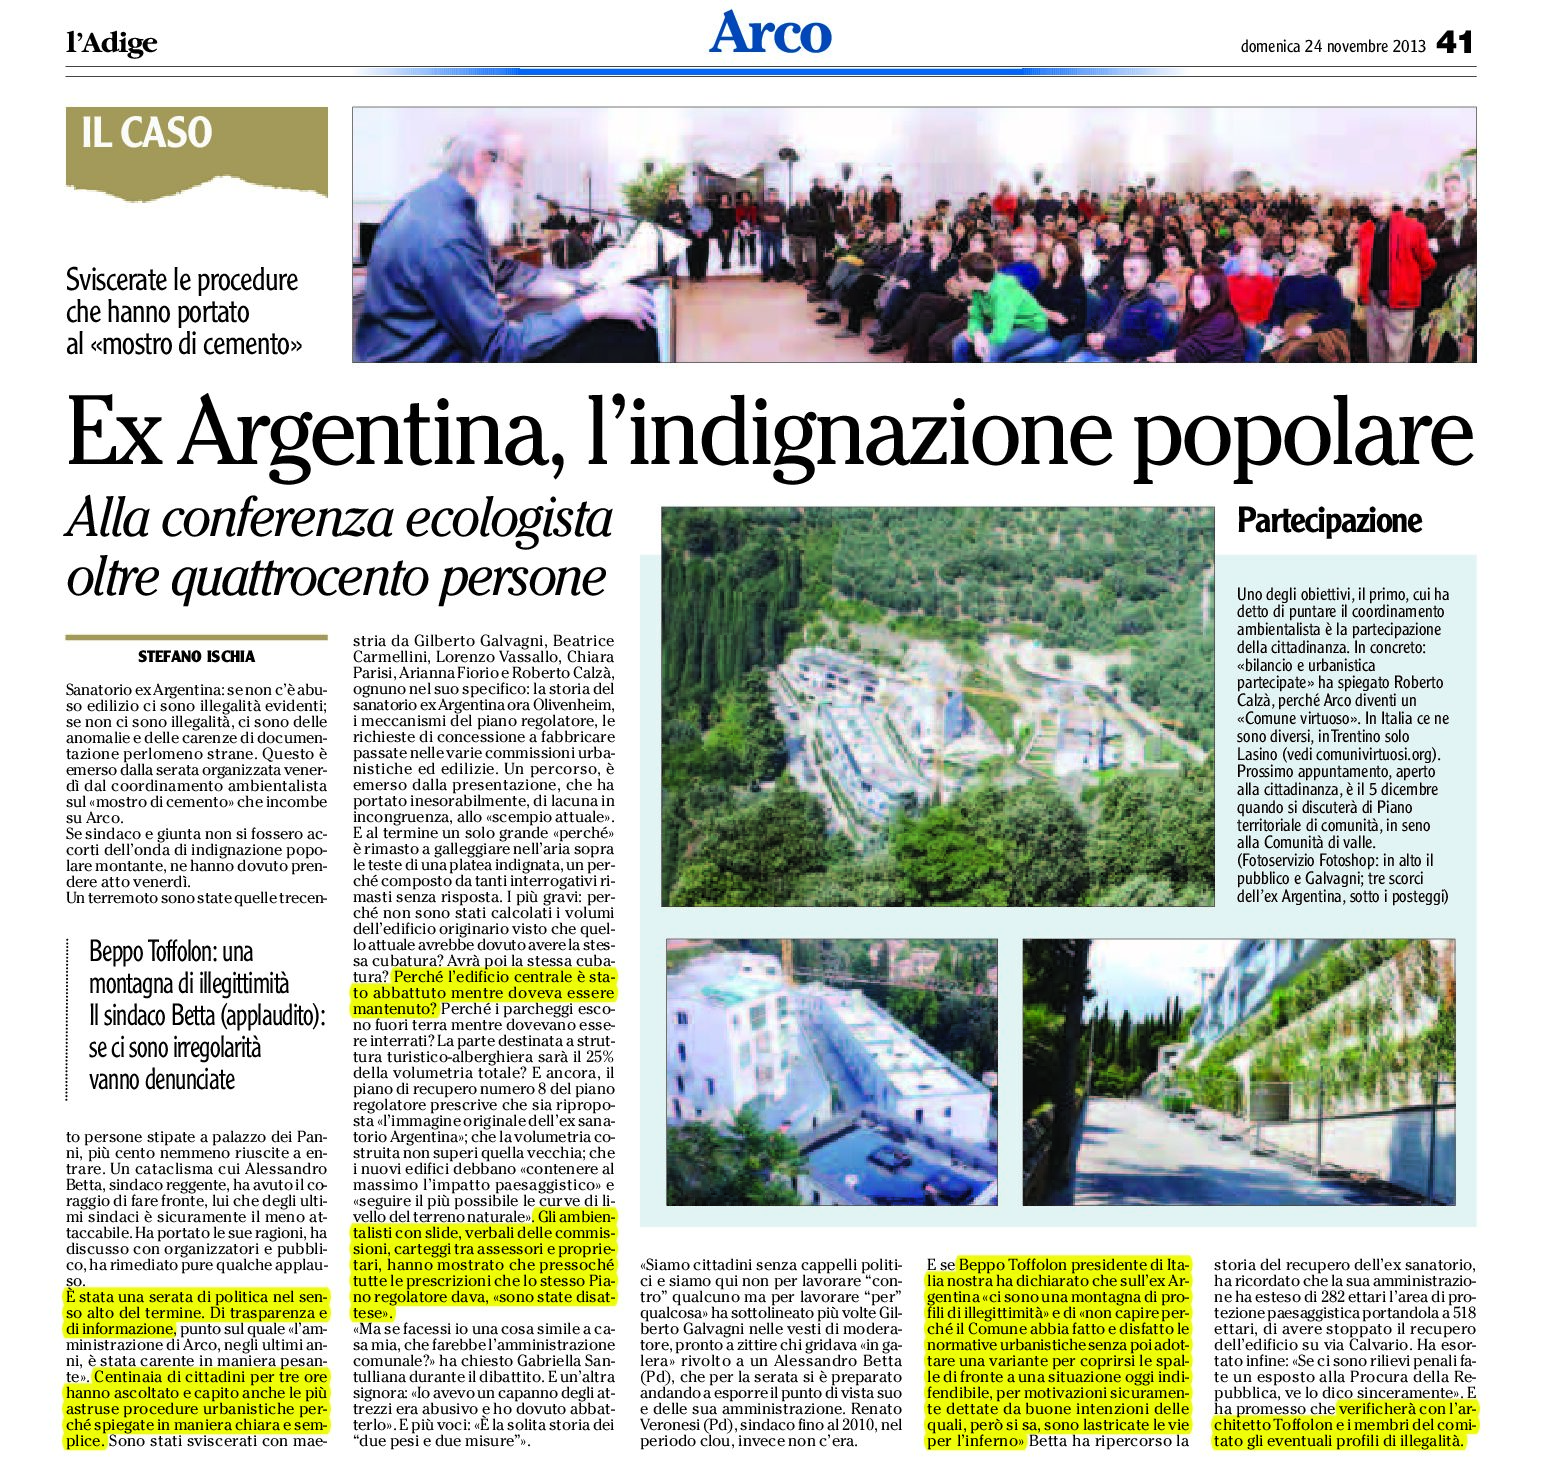 Arco: ex Argentina, l’indignazione popolare. Presenti oltre 400 persone alla conferenza ecologista